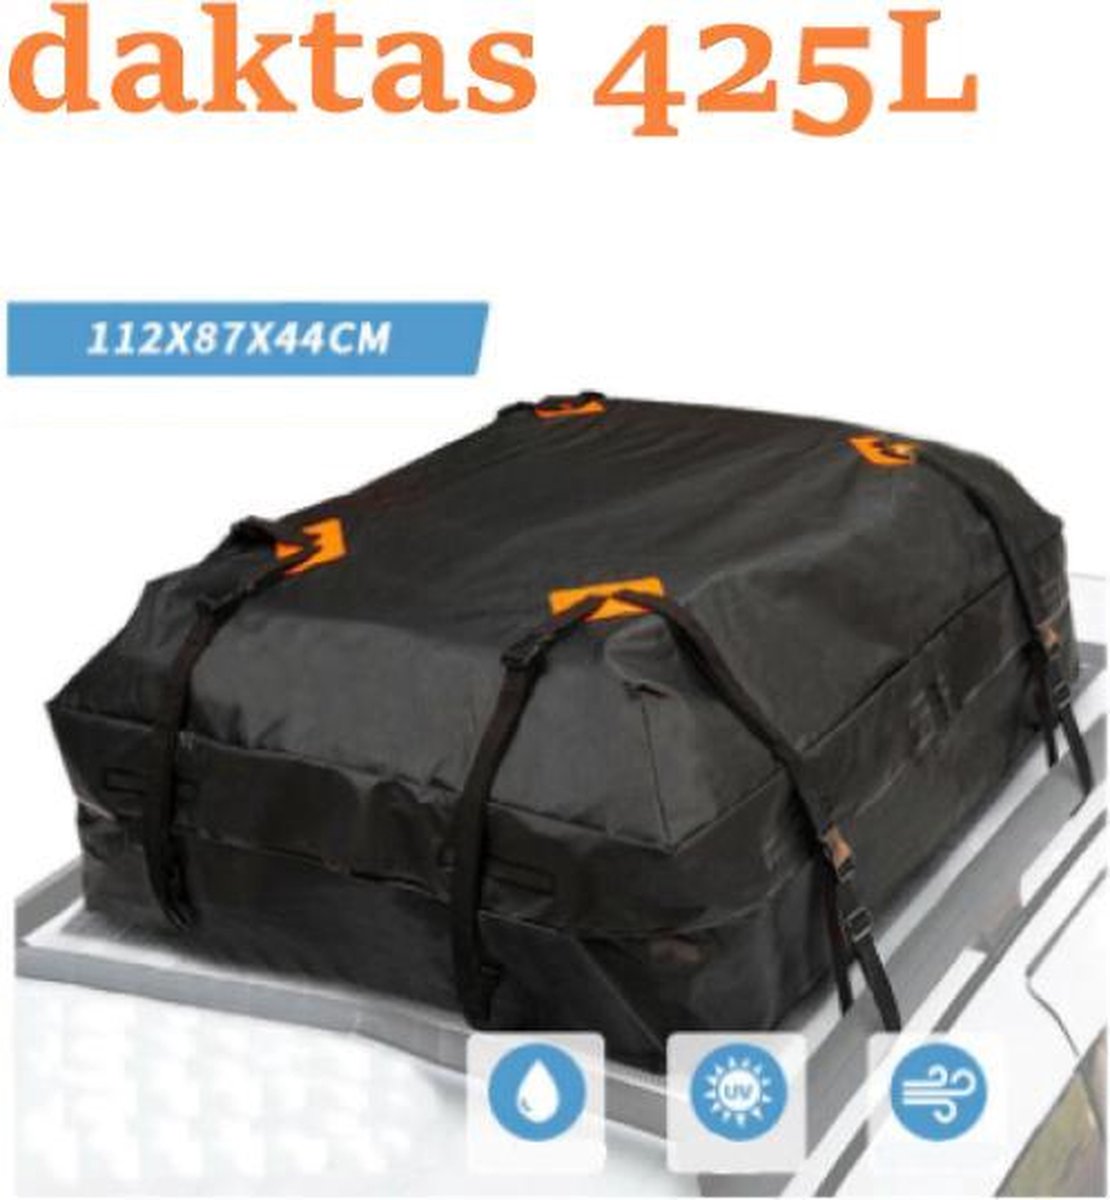 Daktas - Dakkoffer - Dakkoffer tassenset bag - 425 Liter - waterbestendig | bol.com